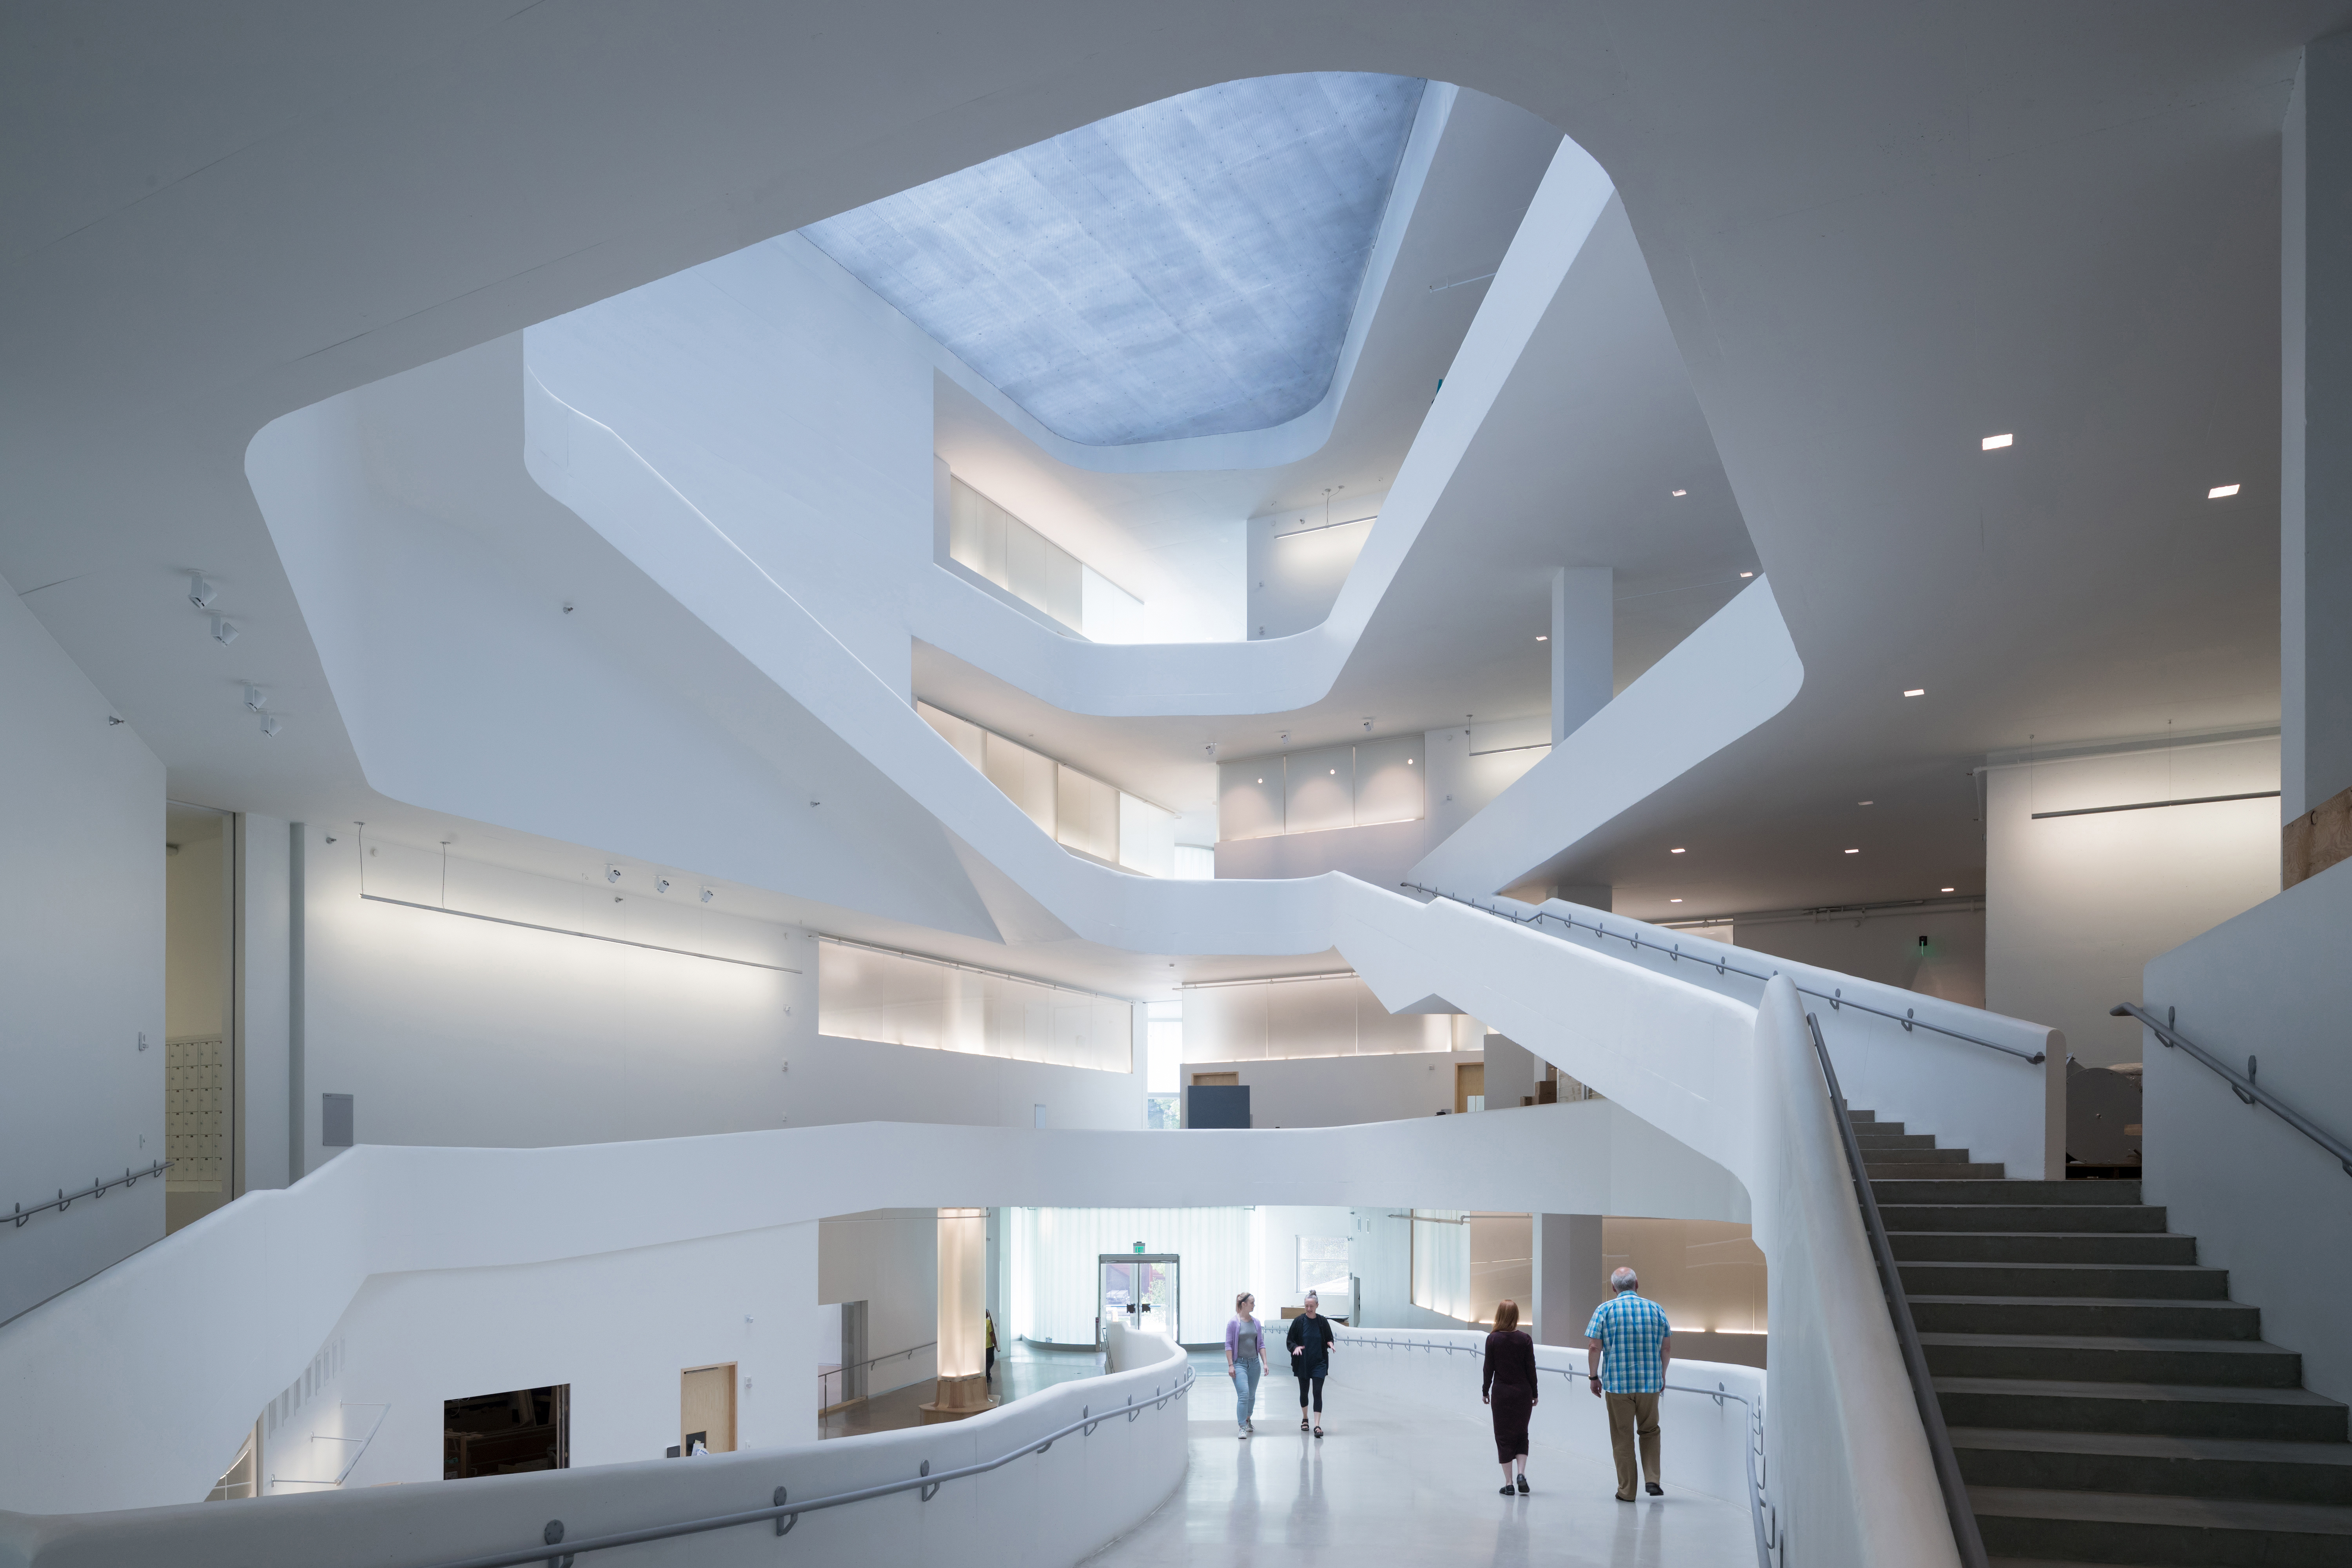 Space architecture. Здание изобразительного искусства в университете Айовы / Steven Holl Architects. Корпус изобразительных искусств университета Айовы.